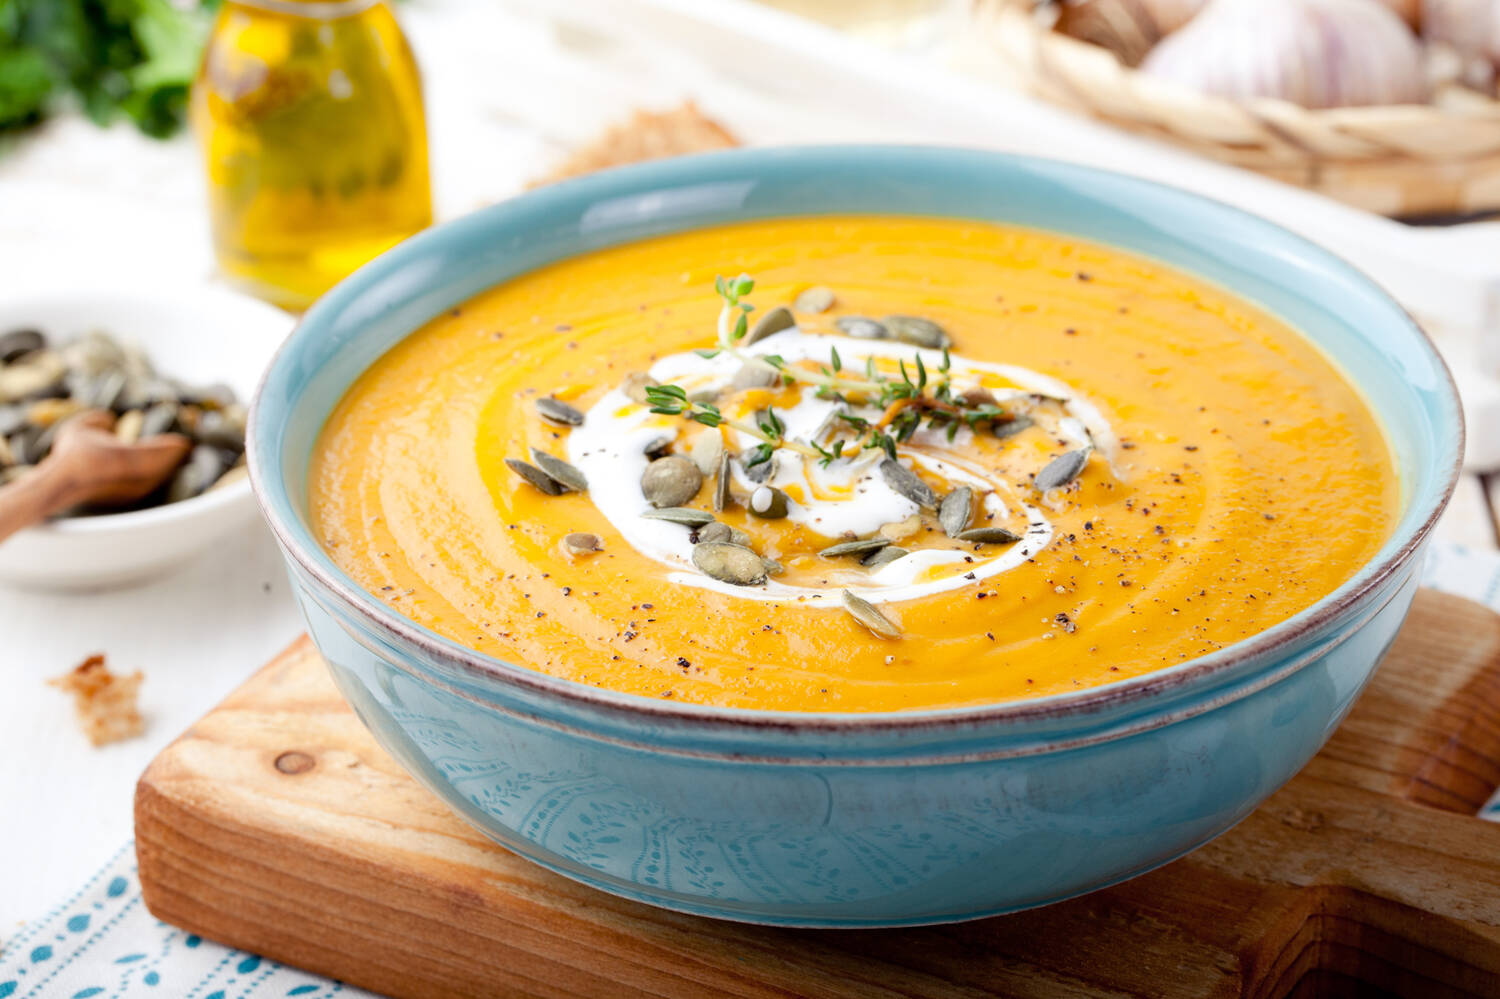 A bowl of pumpkin & lentil soup